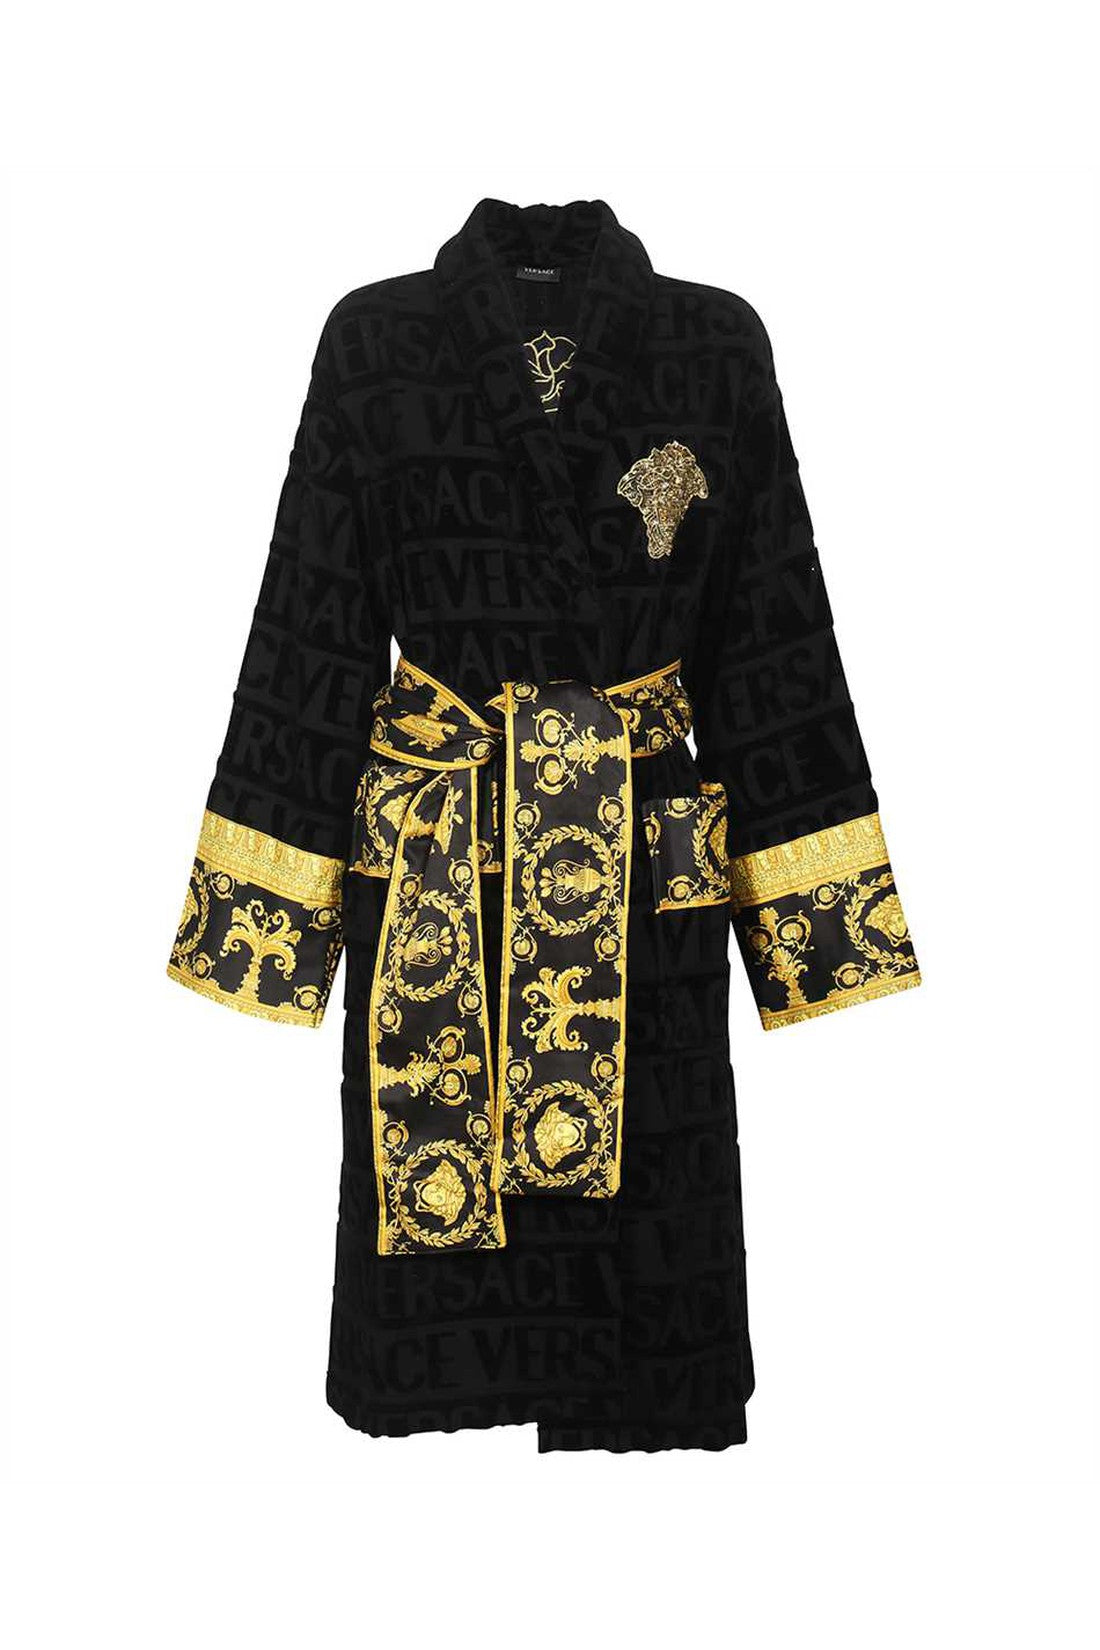 Versace-OUTLET-SALE-Cotton-bathrobe-Accessoires-L-ARCHIVE-COLLECTION.jpg